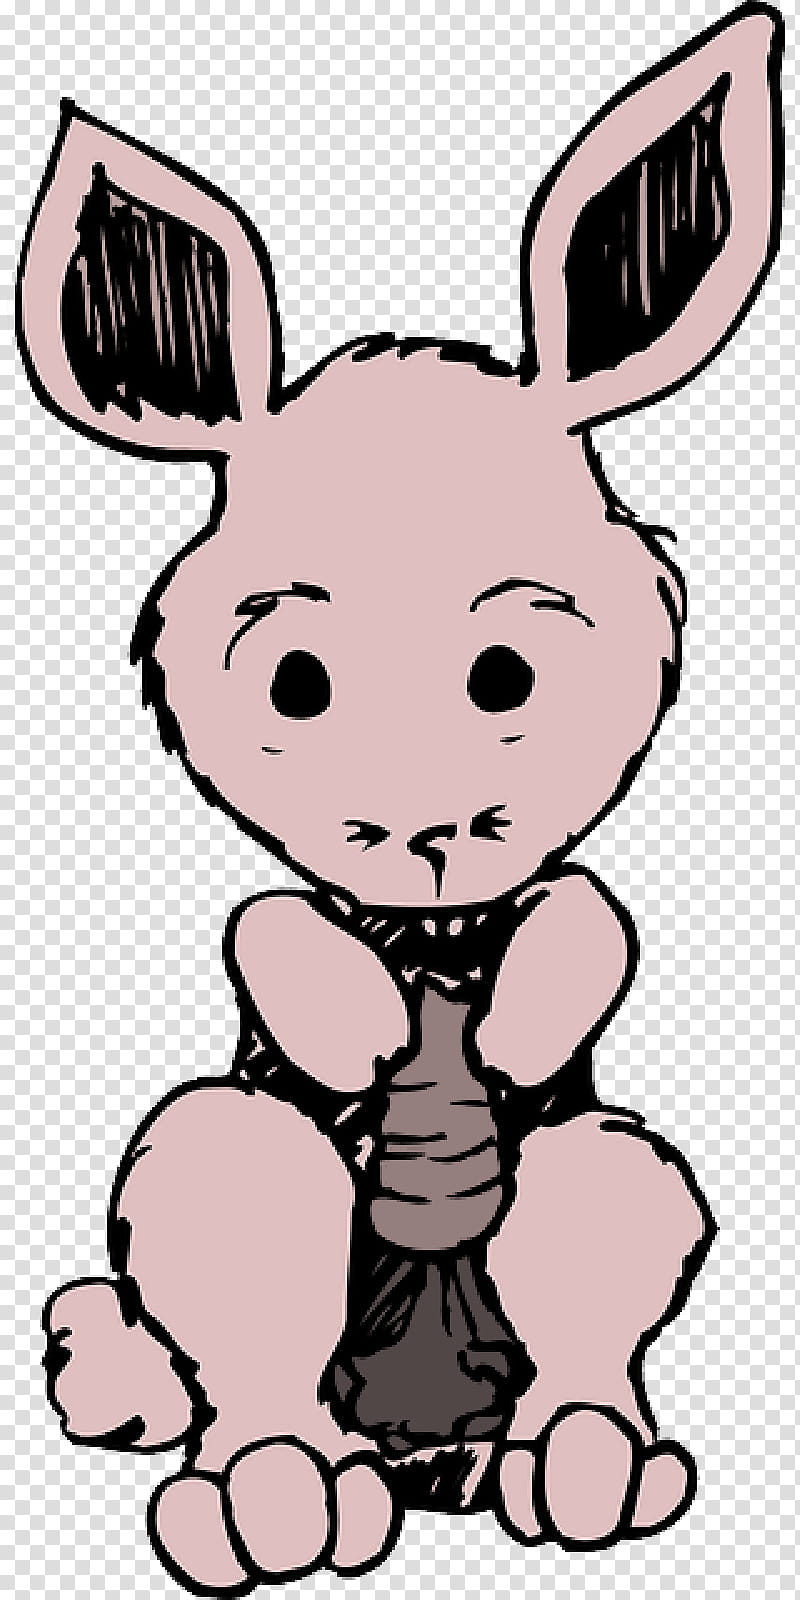 Bugs Bunny, Decal, Gambar Bergerak, Rabbit, Animation, Sticker, Cartoon, Nose transparent background PNG clipart